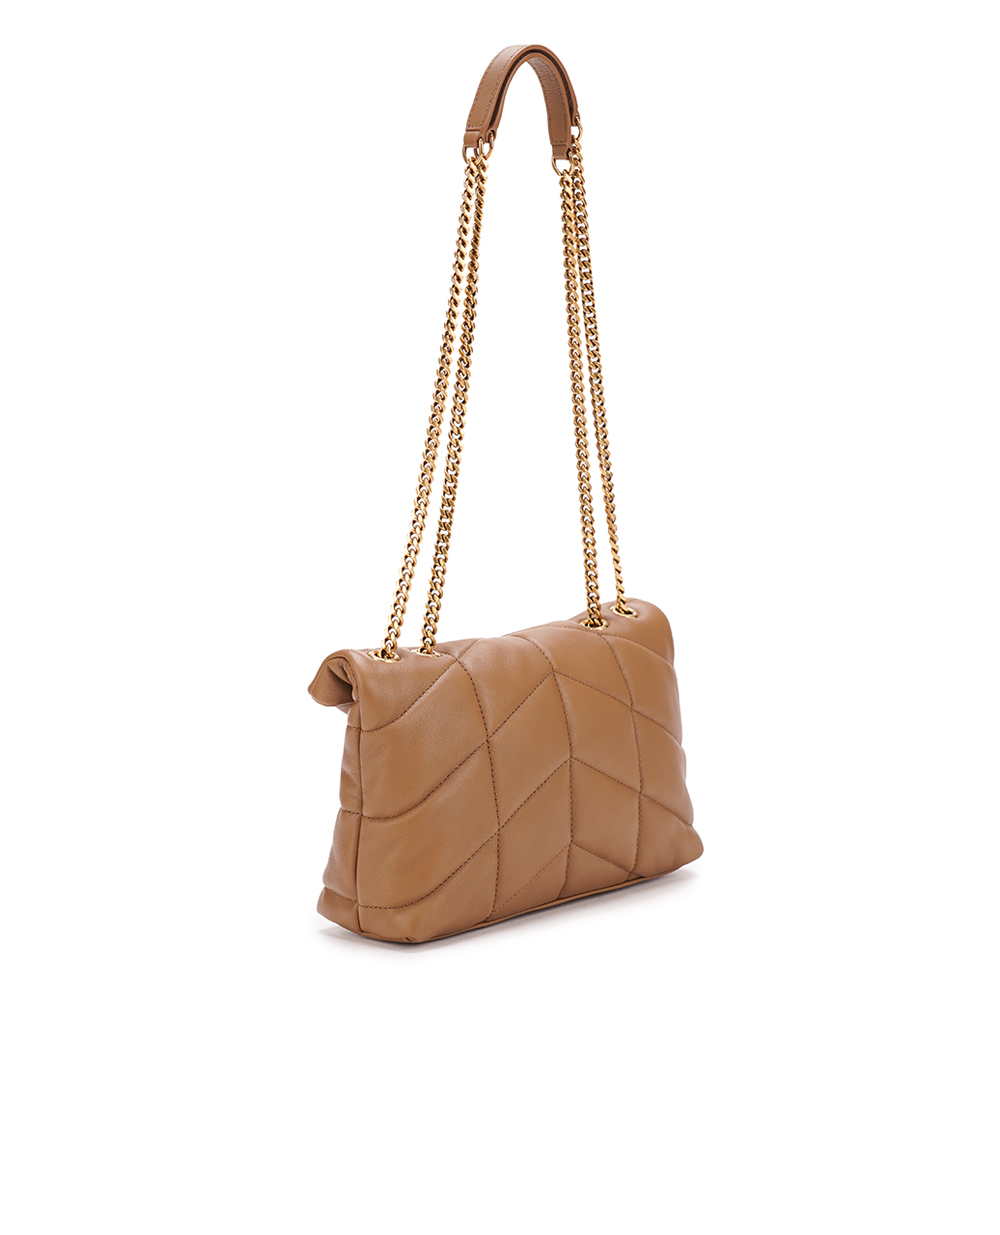 Кожаная сумка Loulou Puffer Toy Saint Laurent 759337-1EL07, коричневый цвет • Купить в интернет-магазине Kameron